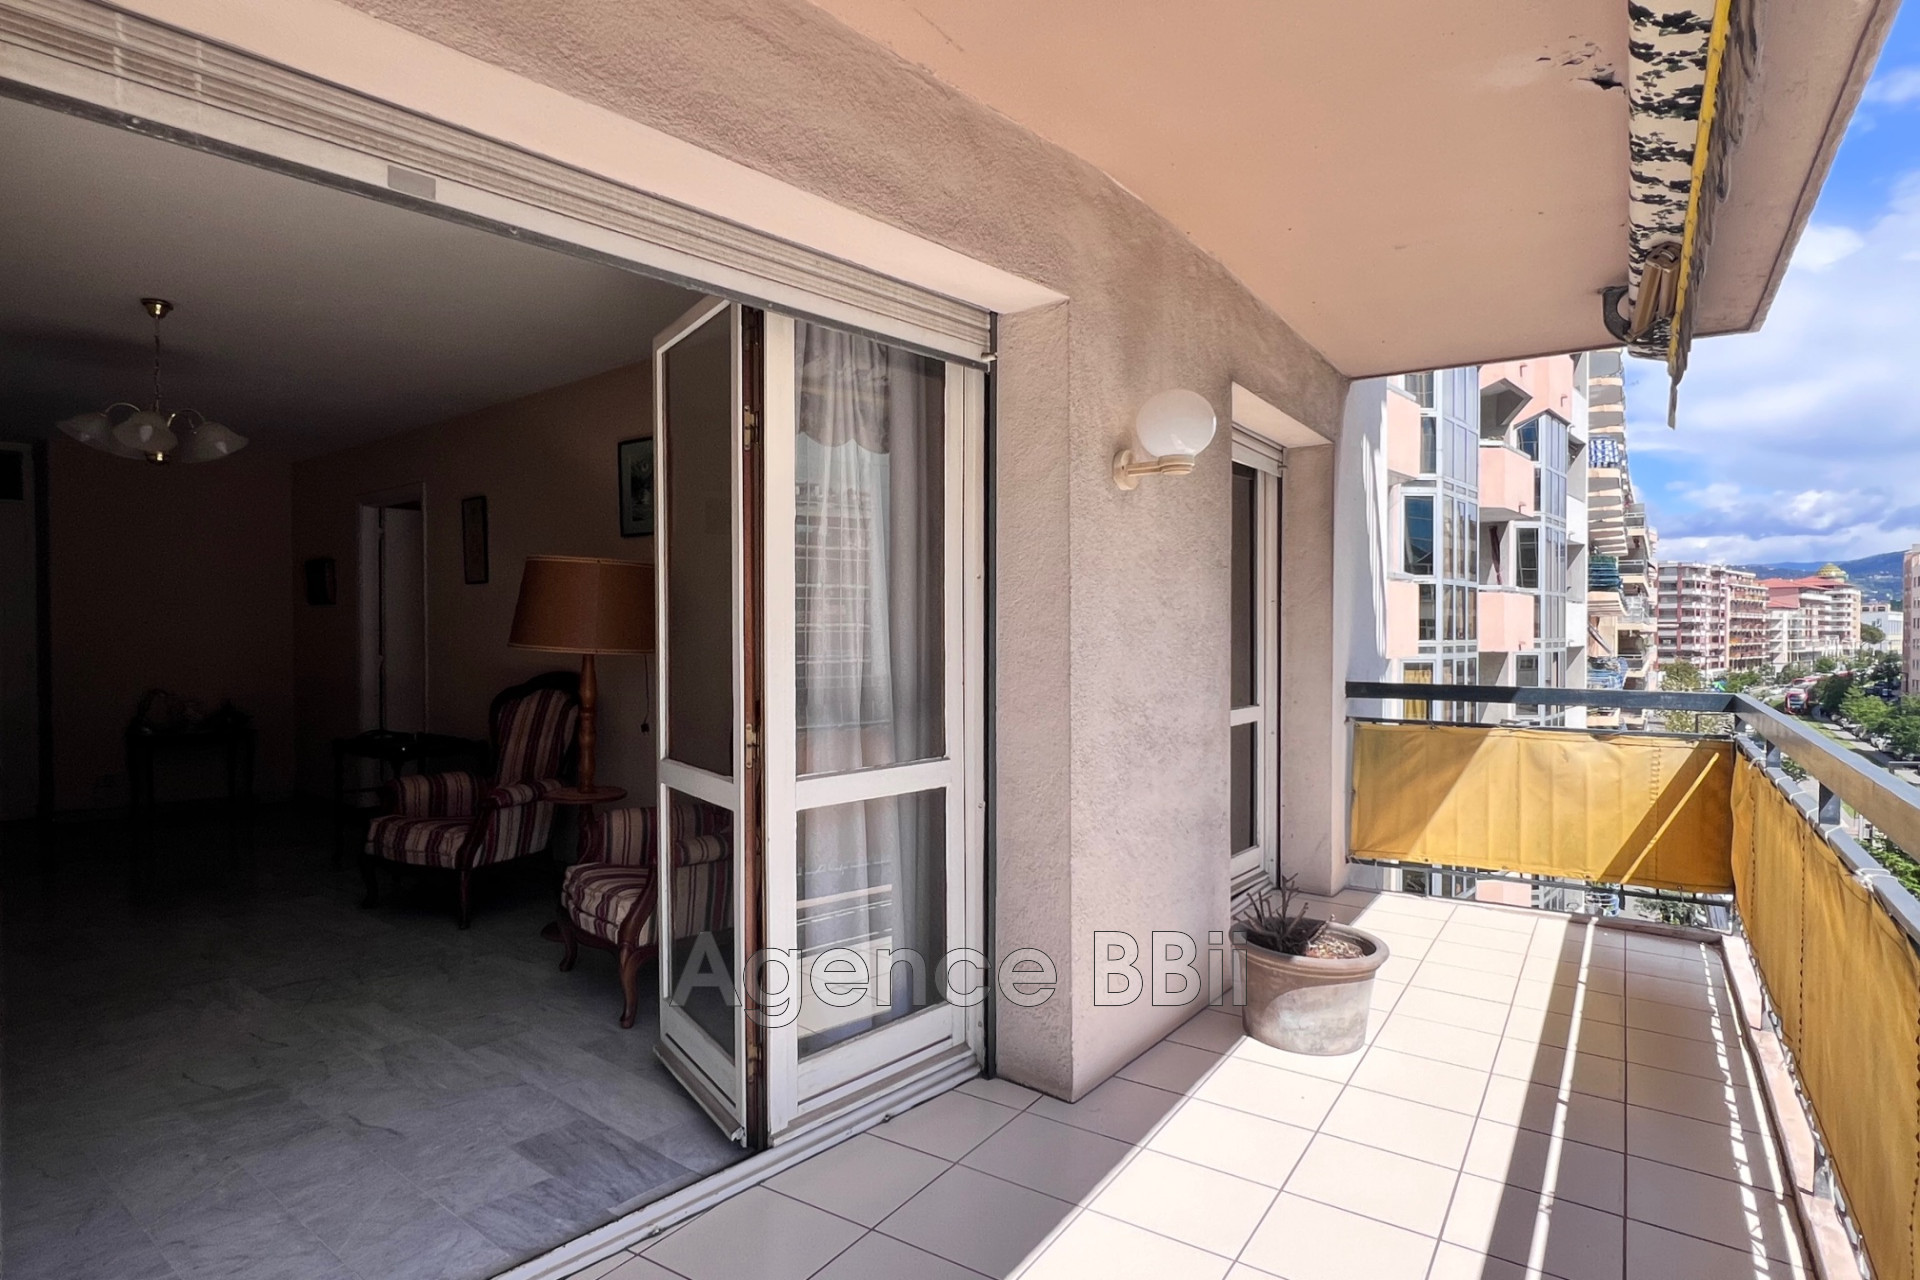 Vente Appartement 86m² 4 Pièces à Nice (06300) - BBII